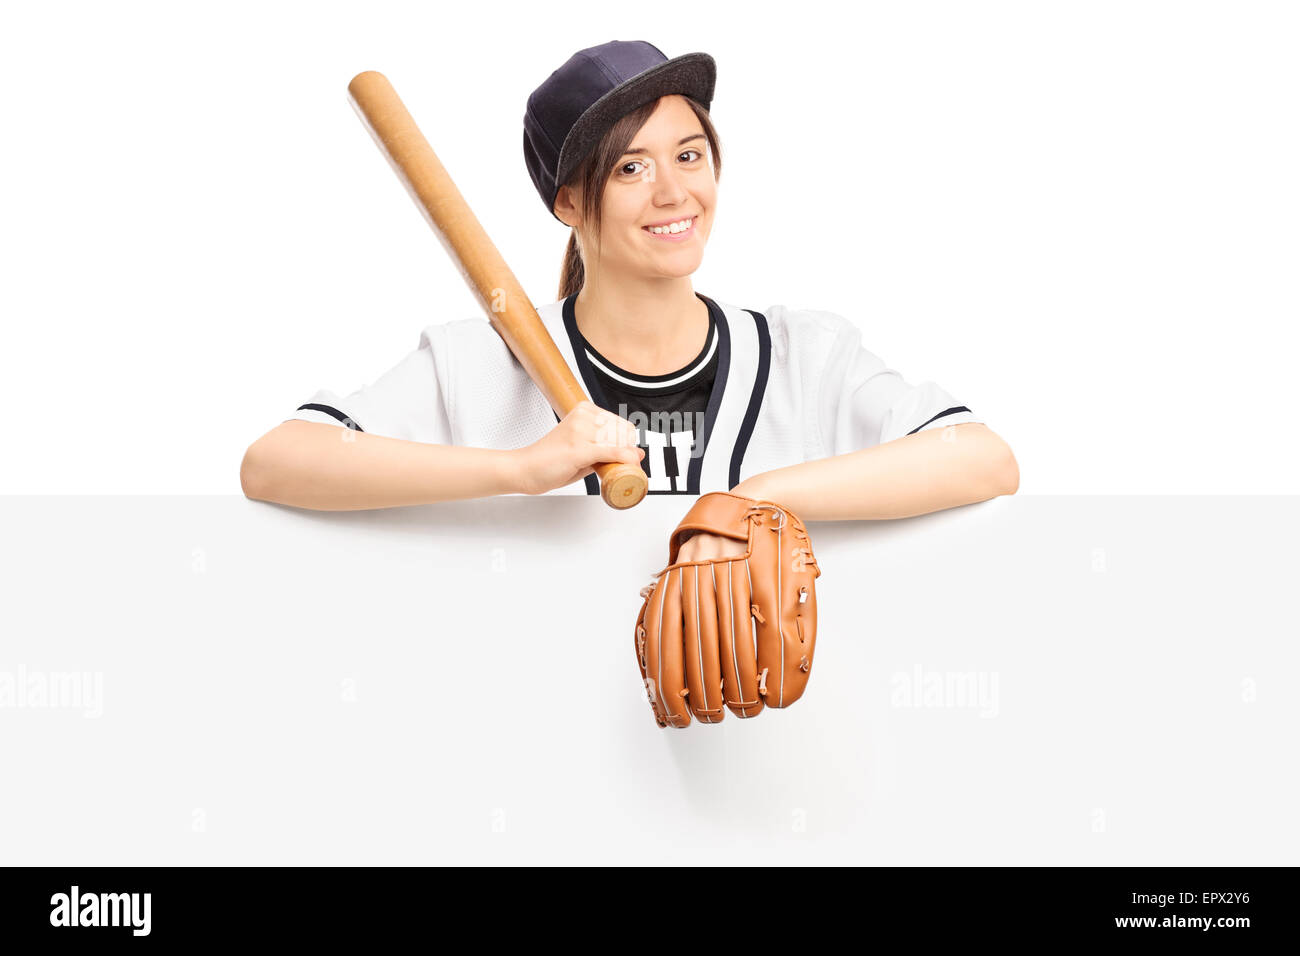 Batte De Portrait De Baseball Et Une Femme En Plein Air Sur Un Terrain Pour  La